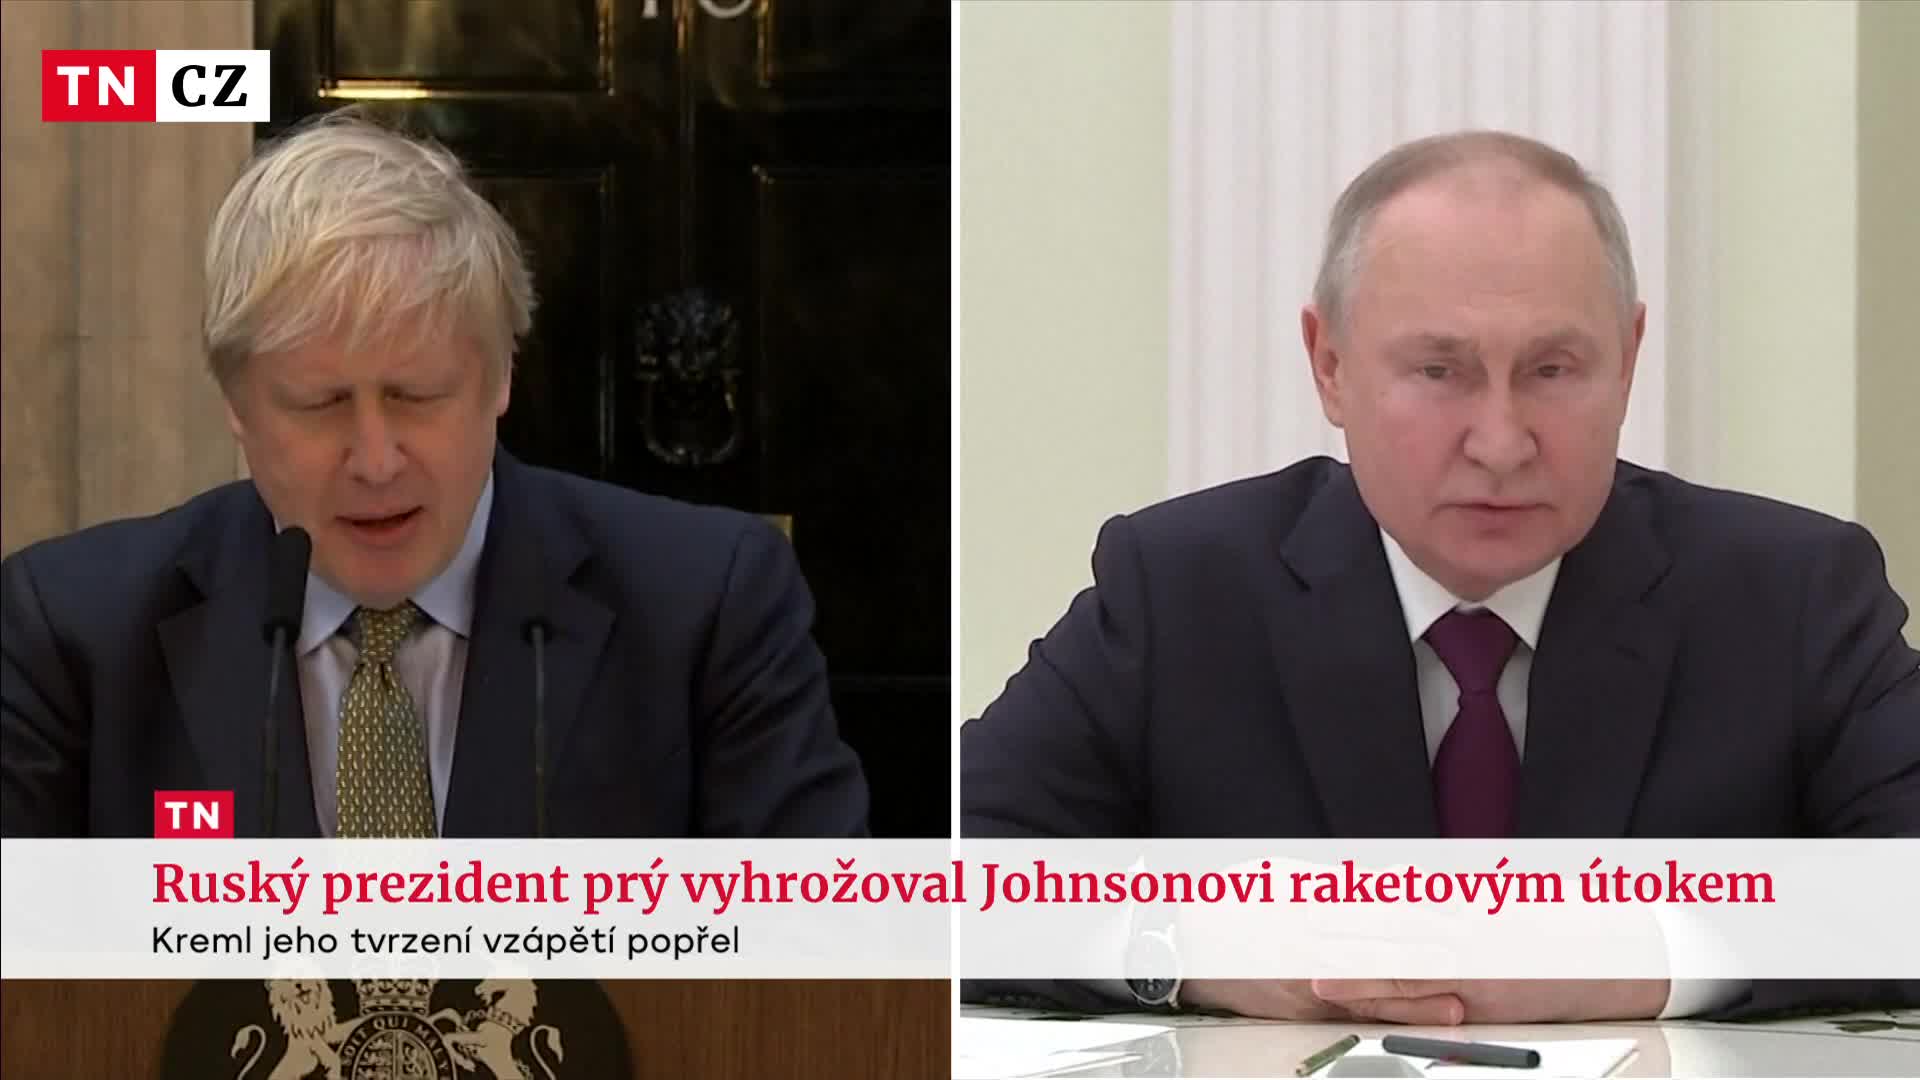 Boris Johnson dostal zprávu od Vladimíra Putina. Měl mu vyhrožovat raketovým útokem